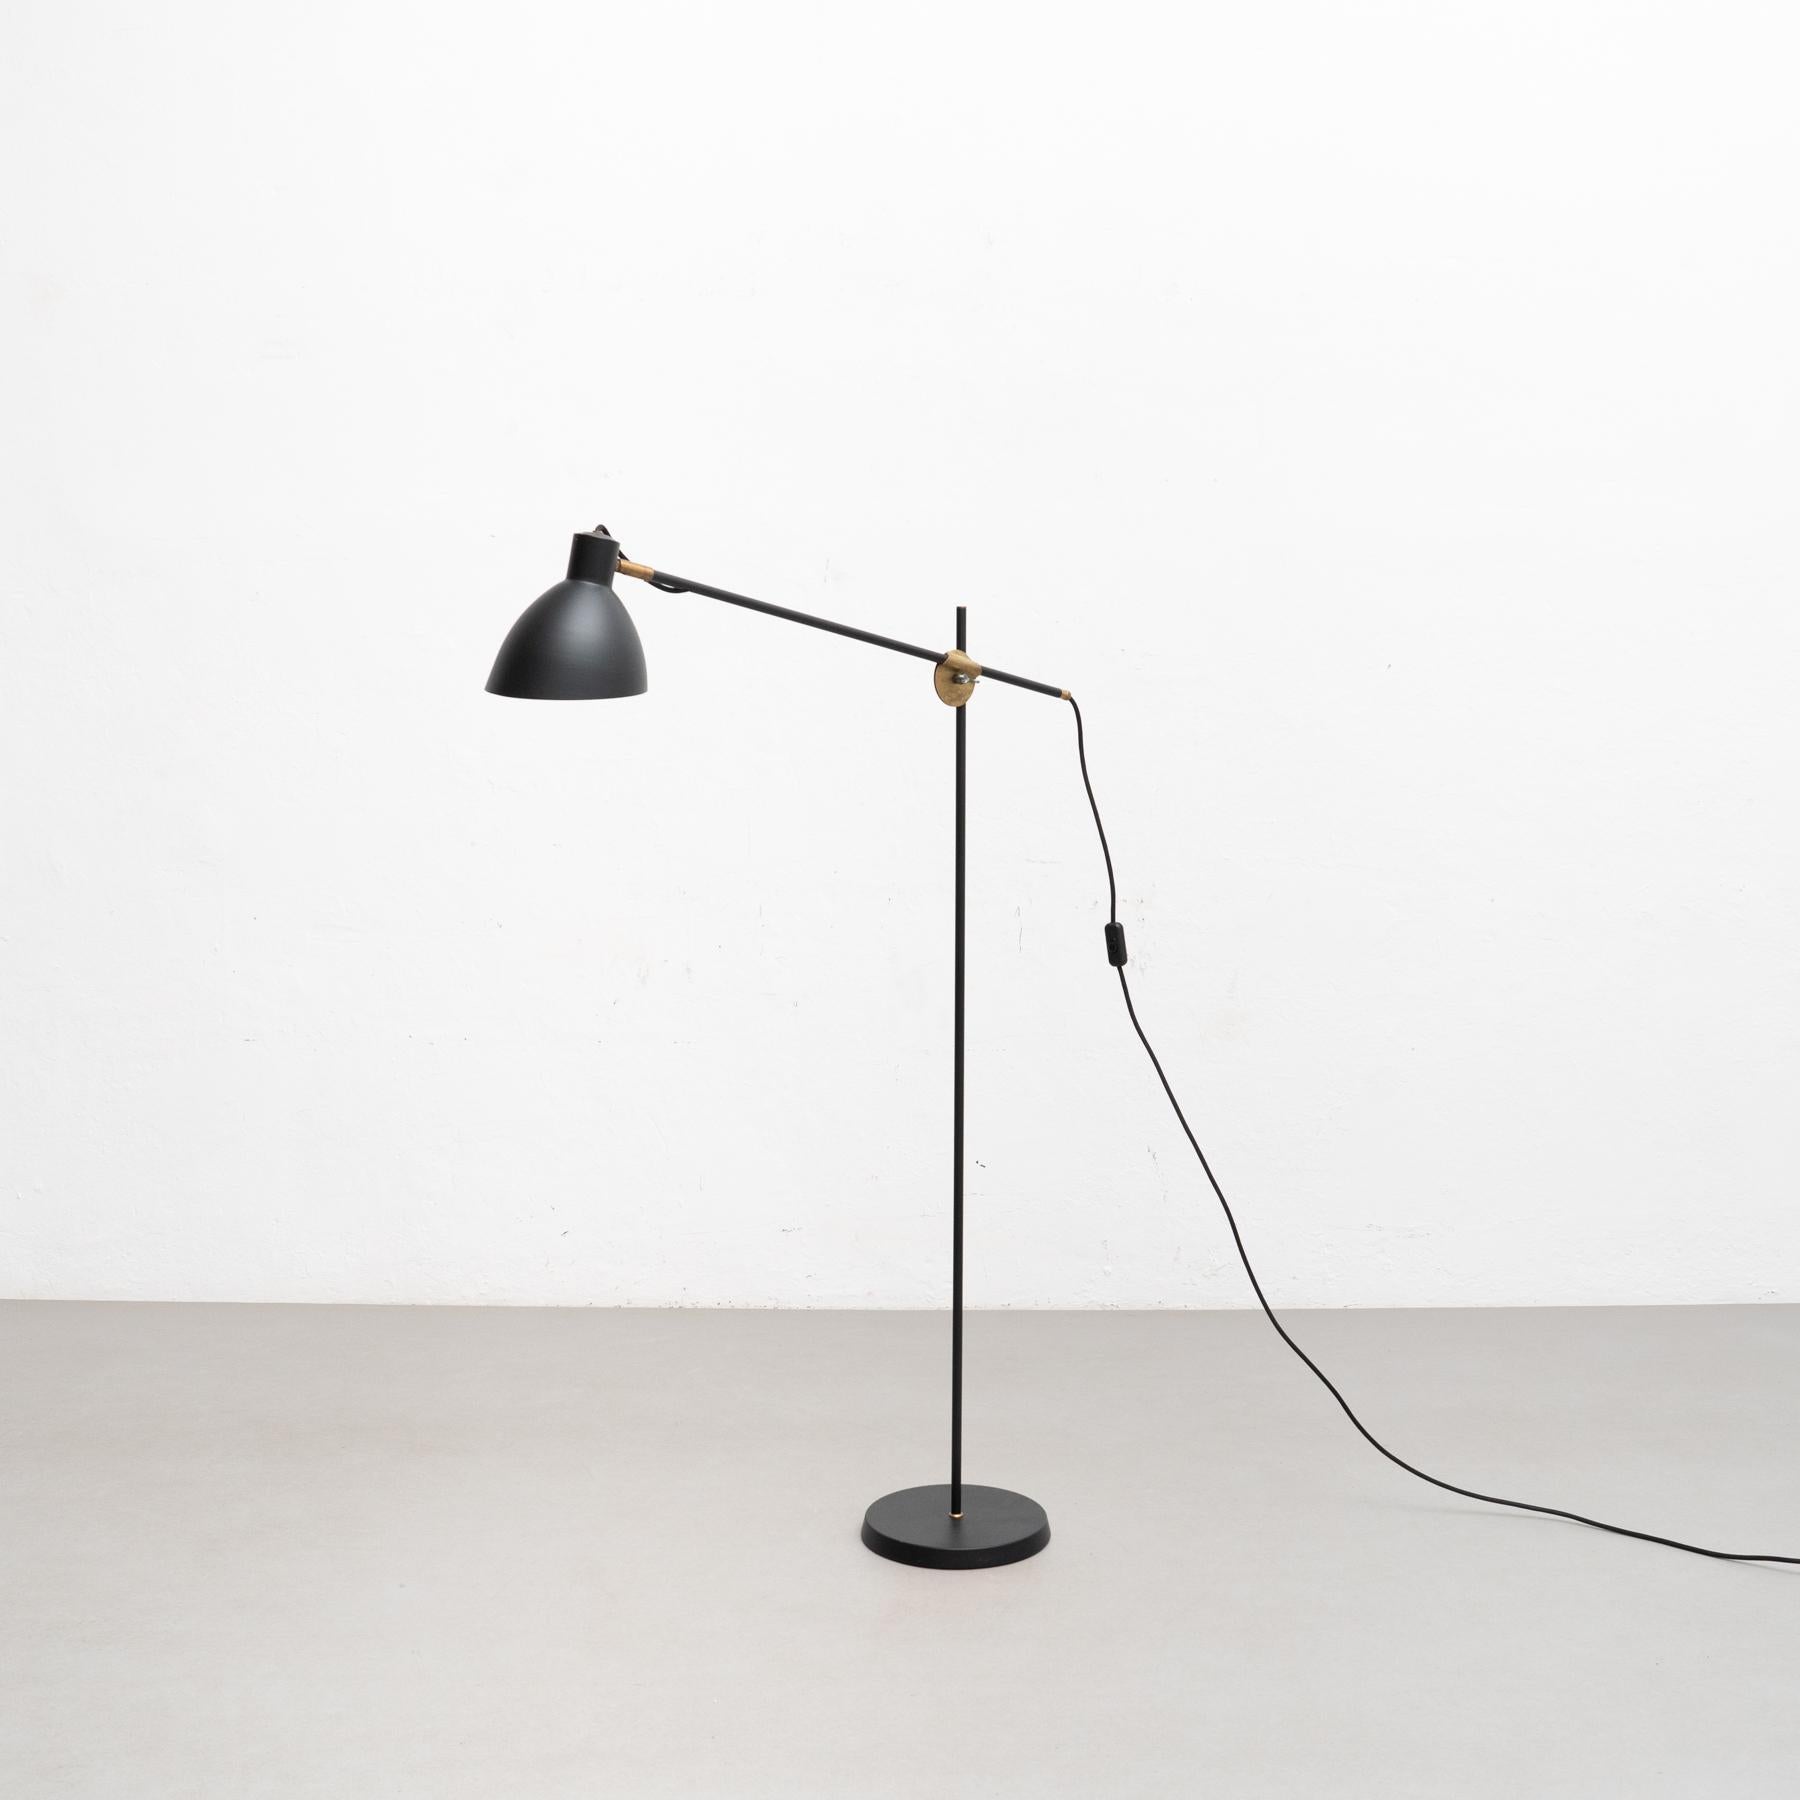 Lampe modèle KH#1 lampadaire conçu par Konsthantverk et fabriqué par eux-mêmes.

La production de lampes, d'appliques et de lampadaires est réalisée de manière artisanale avec les mêmes matériaux et techniques que les premiers modèles.

Matériaux et